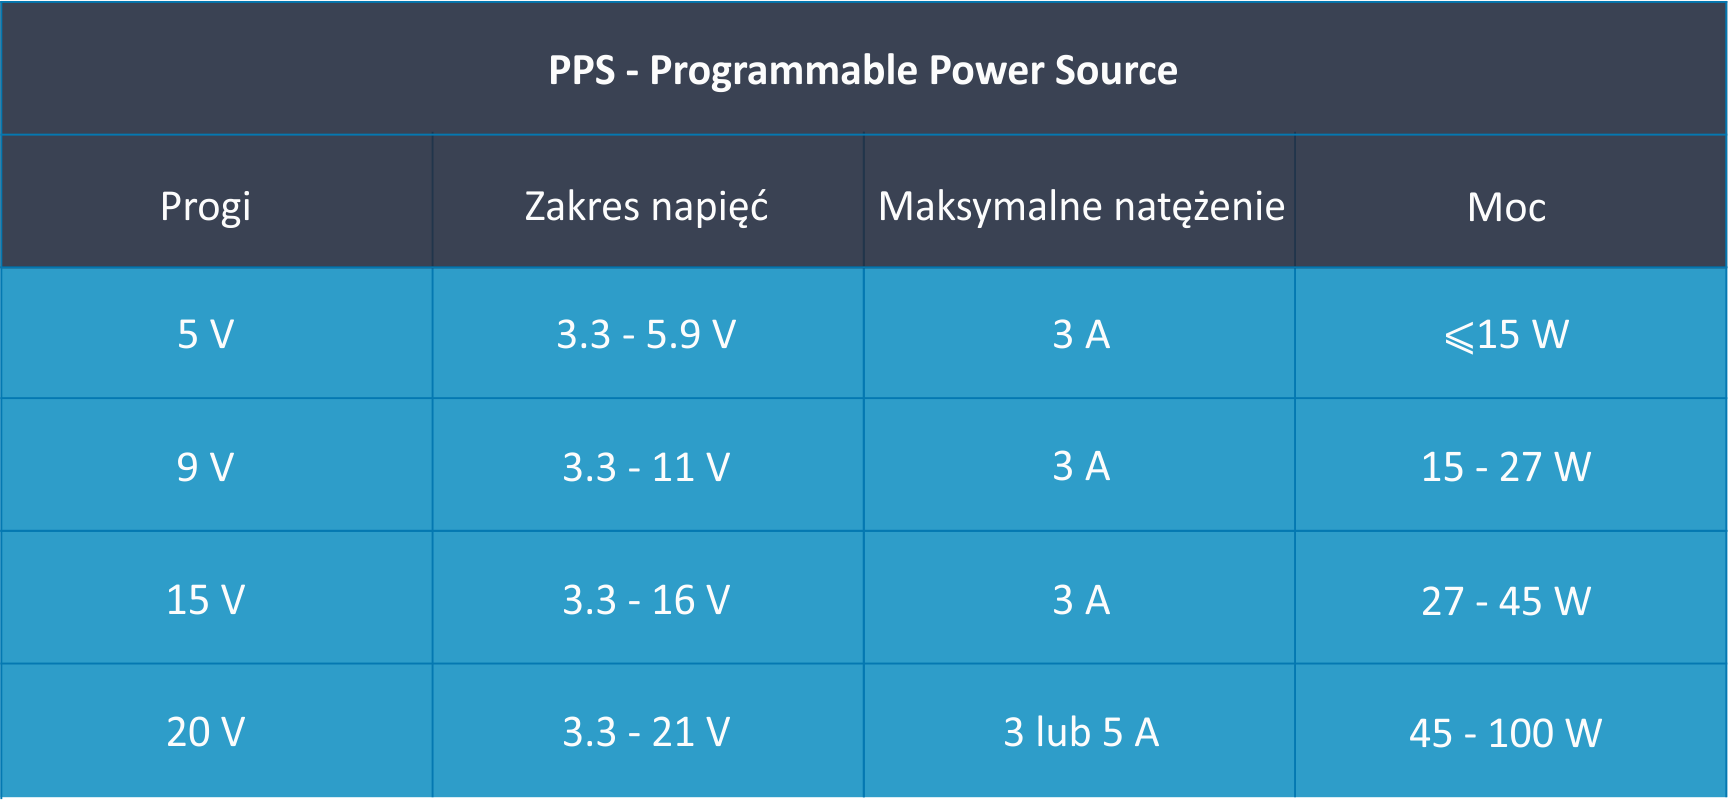 Tabela przedstawiająca zakresy napięć i mocy dla protokołu PPS